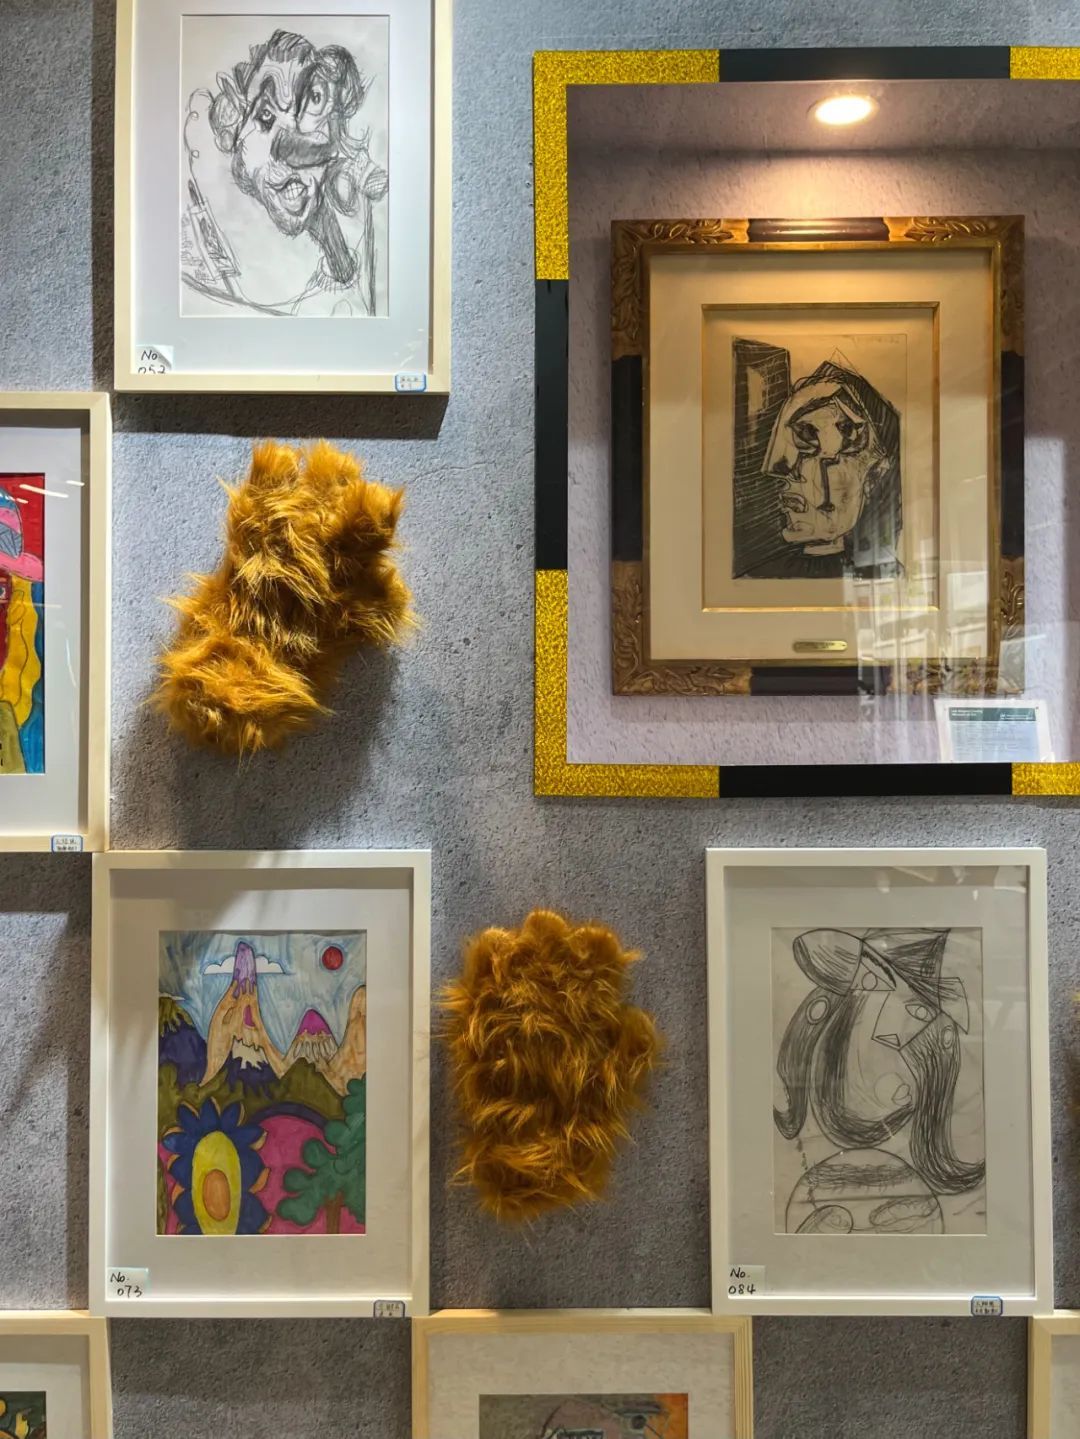 上海兴业太古汇熊爪咖啡店，由孤独症儿童创作的毕加索风格画组成的画展。金色画框里放着一副收藏家出借的毕加索画作。摄影/本刊记者 龚怡洁